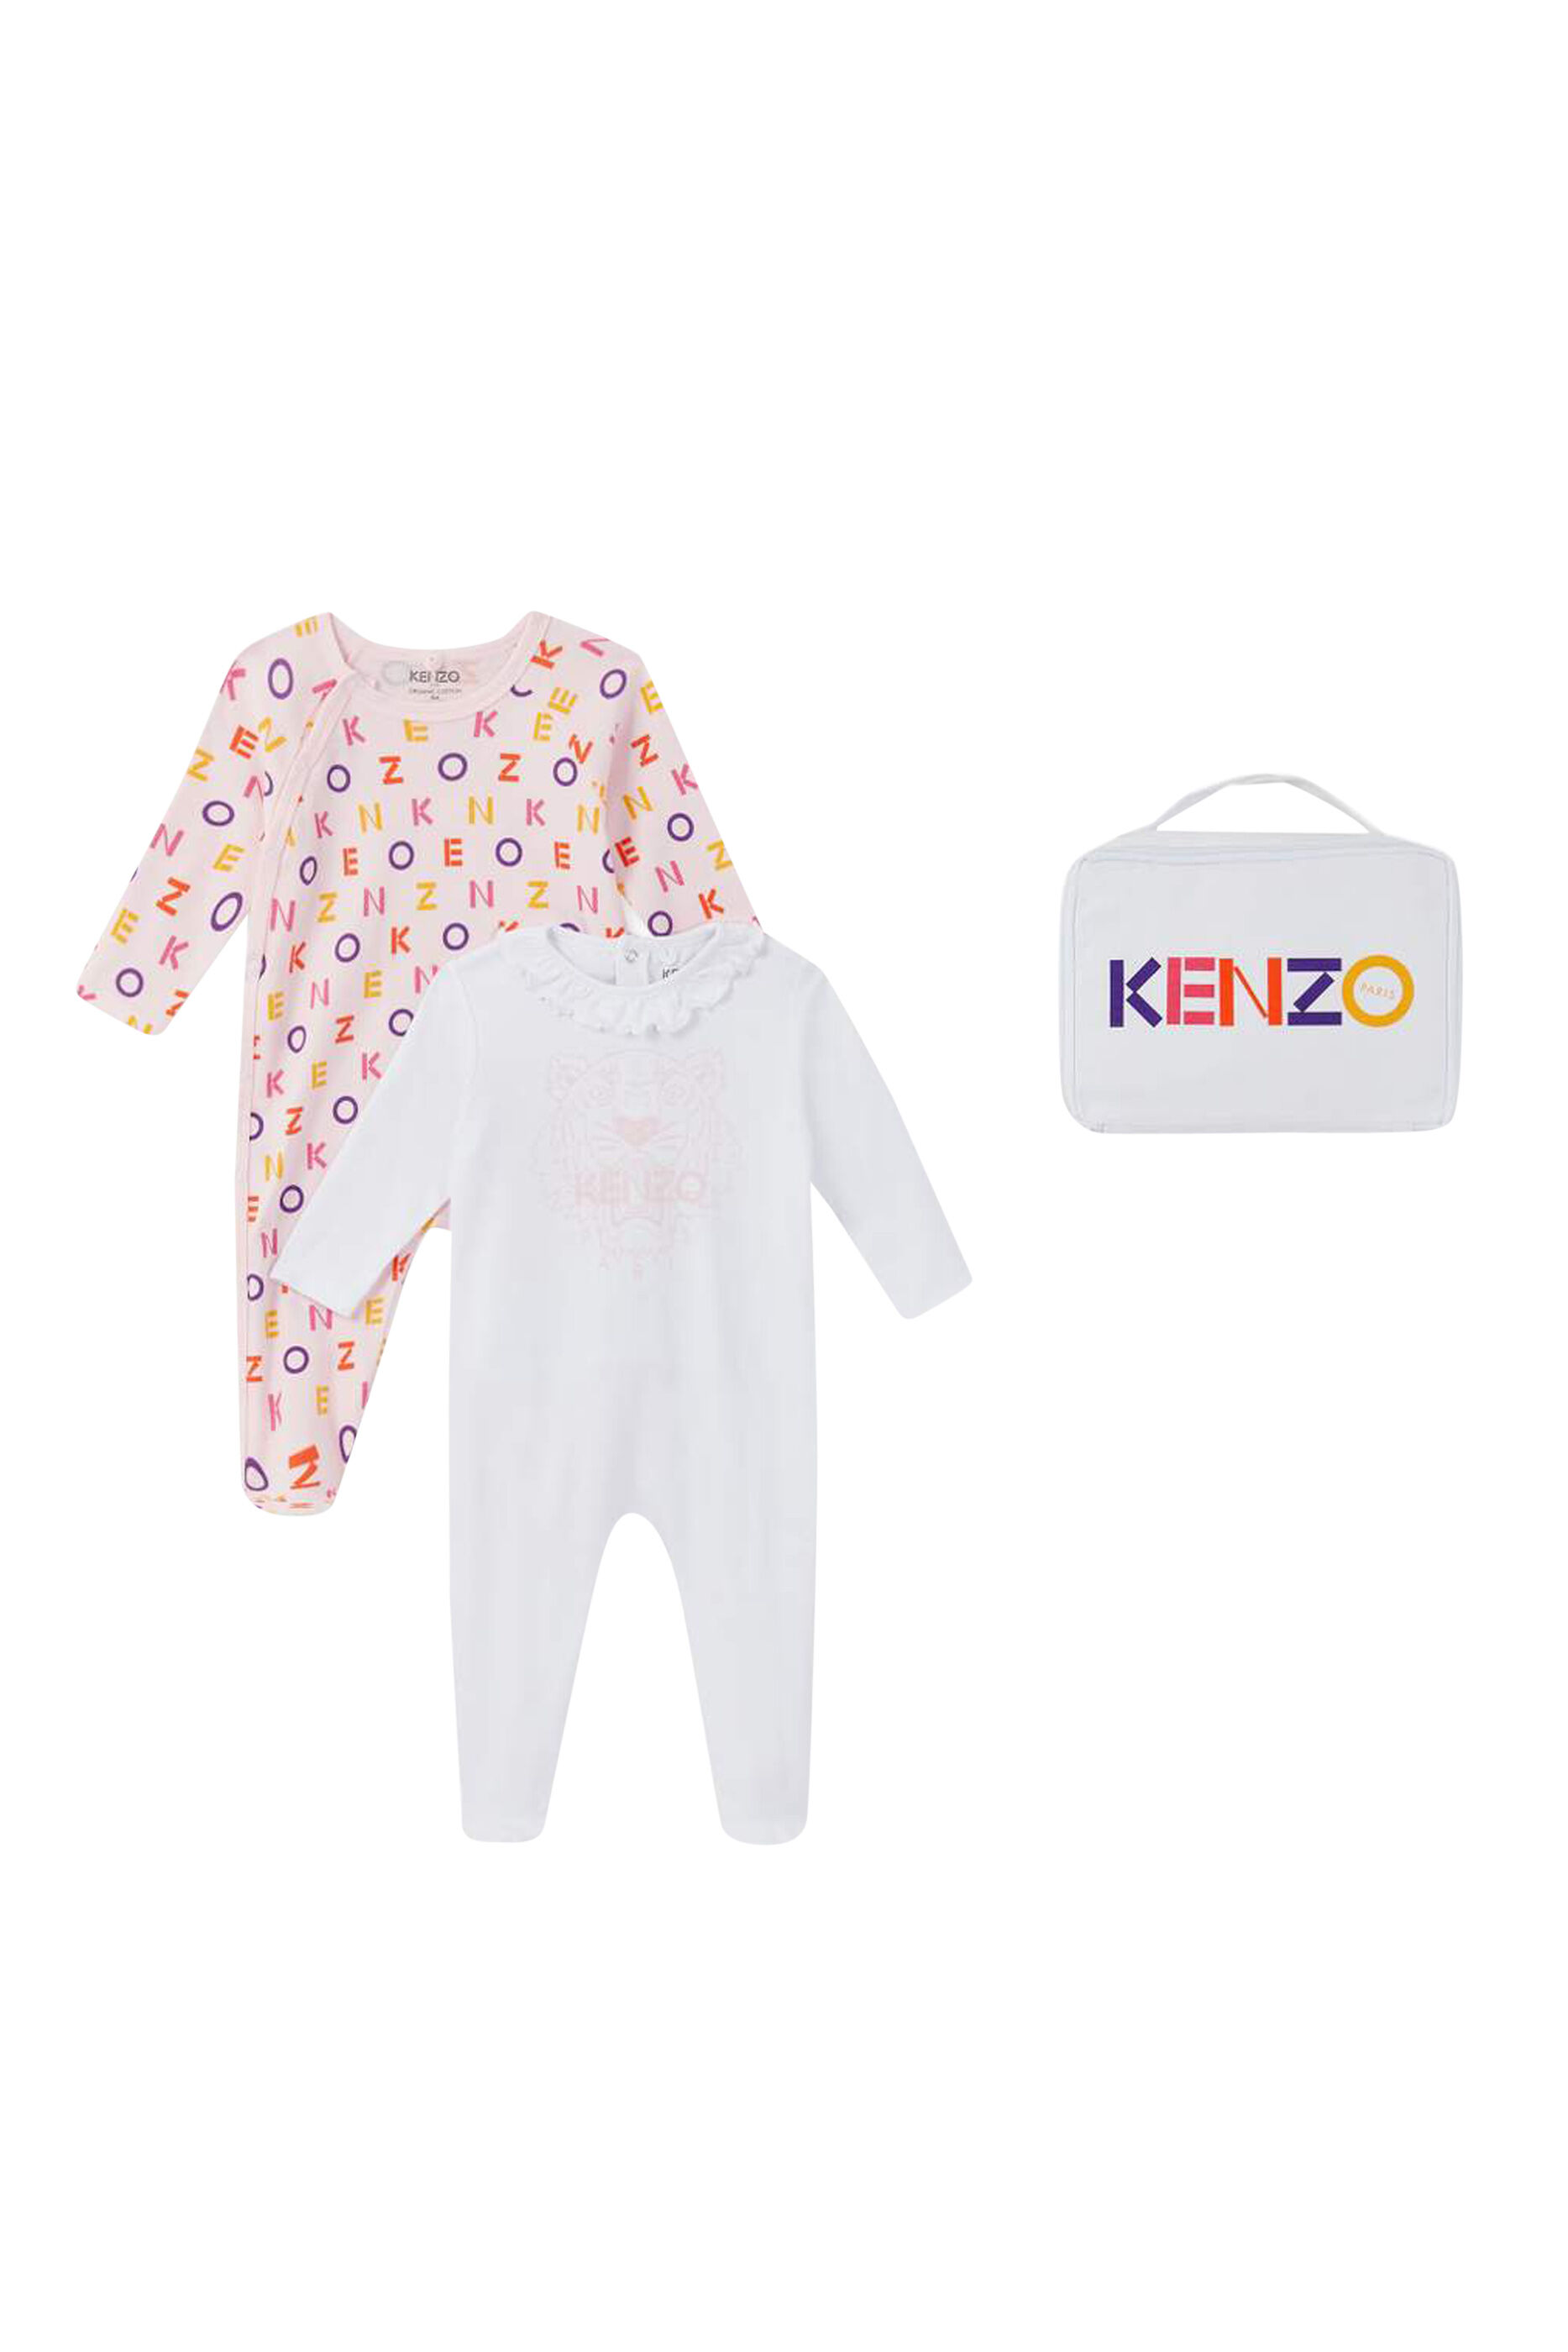 kenzo sleepsuit